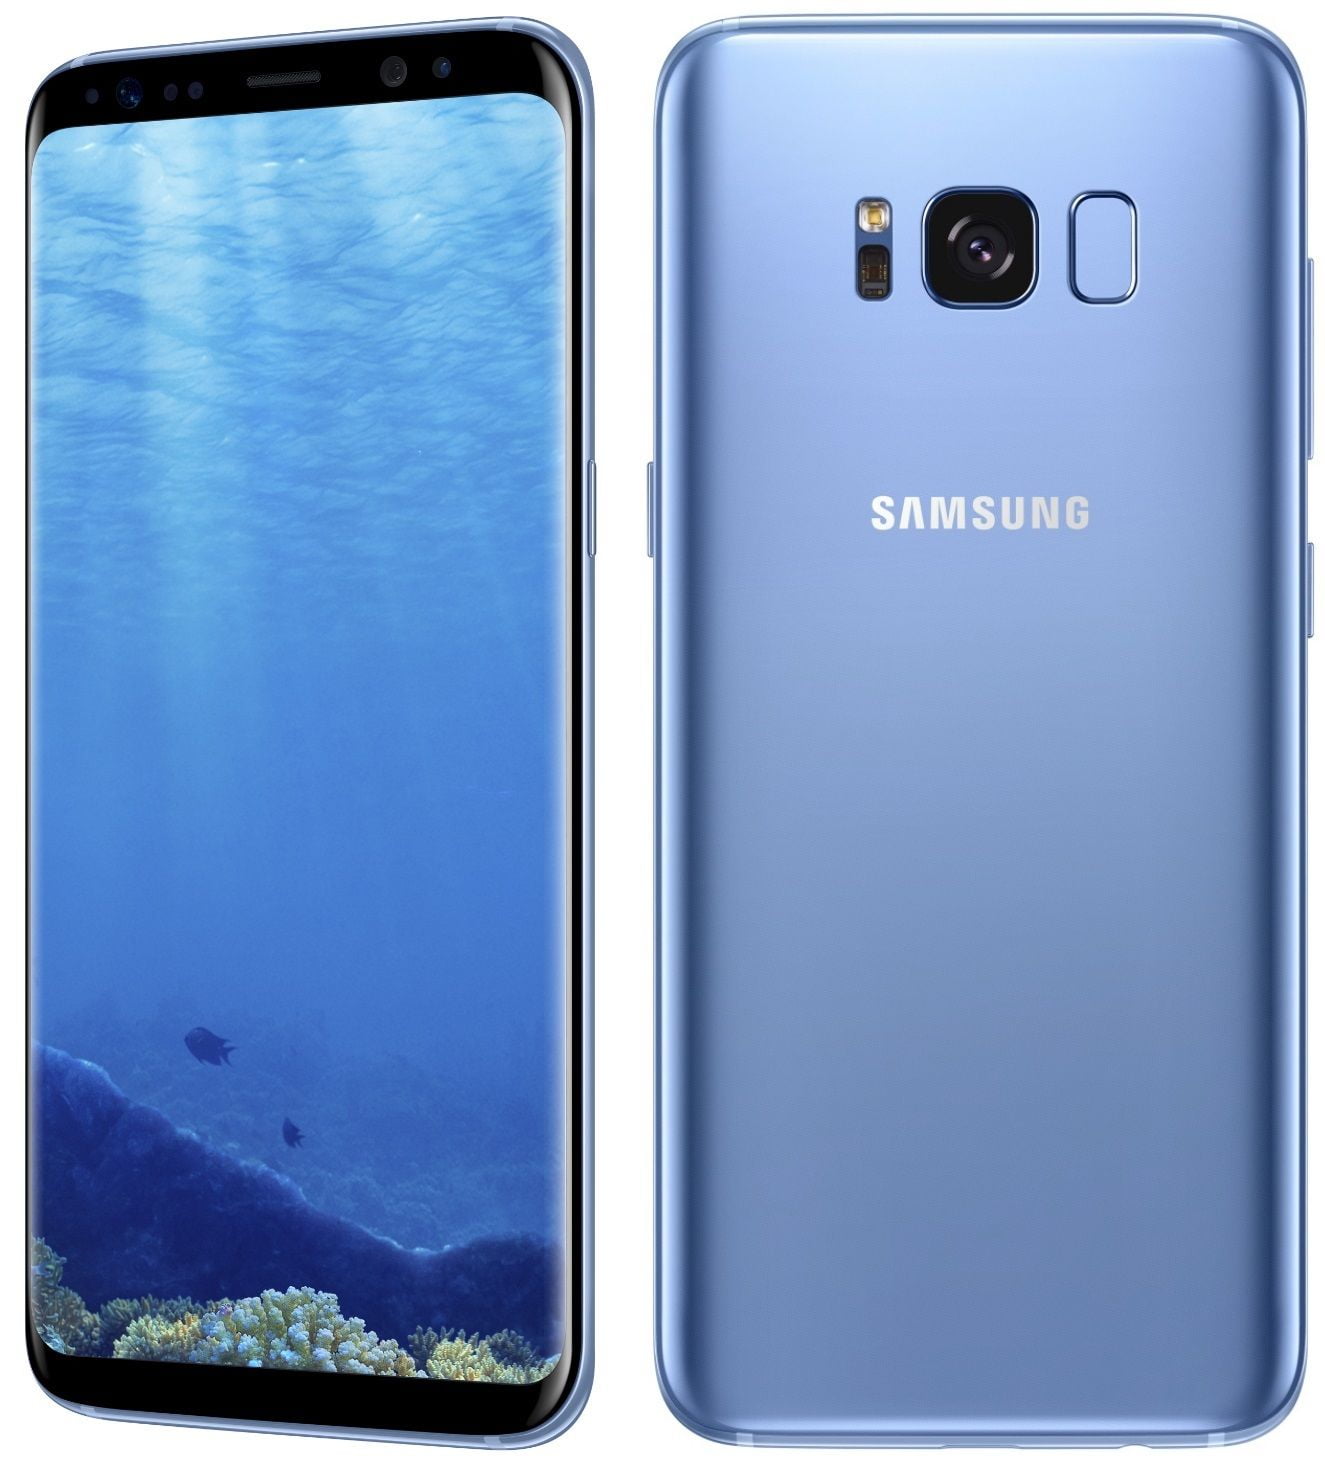 Restored Galaxy G950U 64GB Verizon GSM Unlocked AT&T T-Mobile - Coral Blue (Refurbished) - Walmart.com